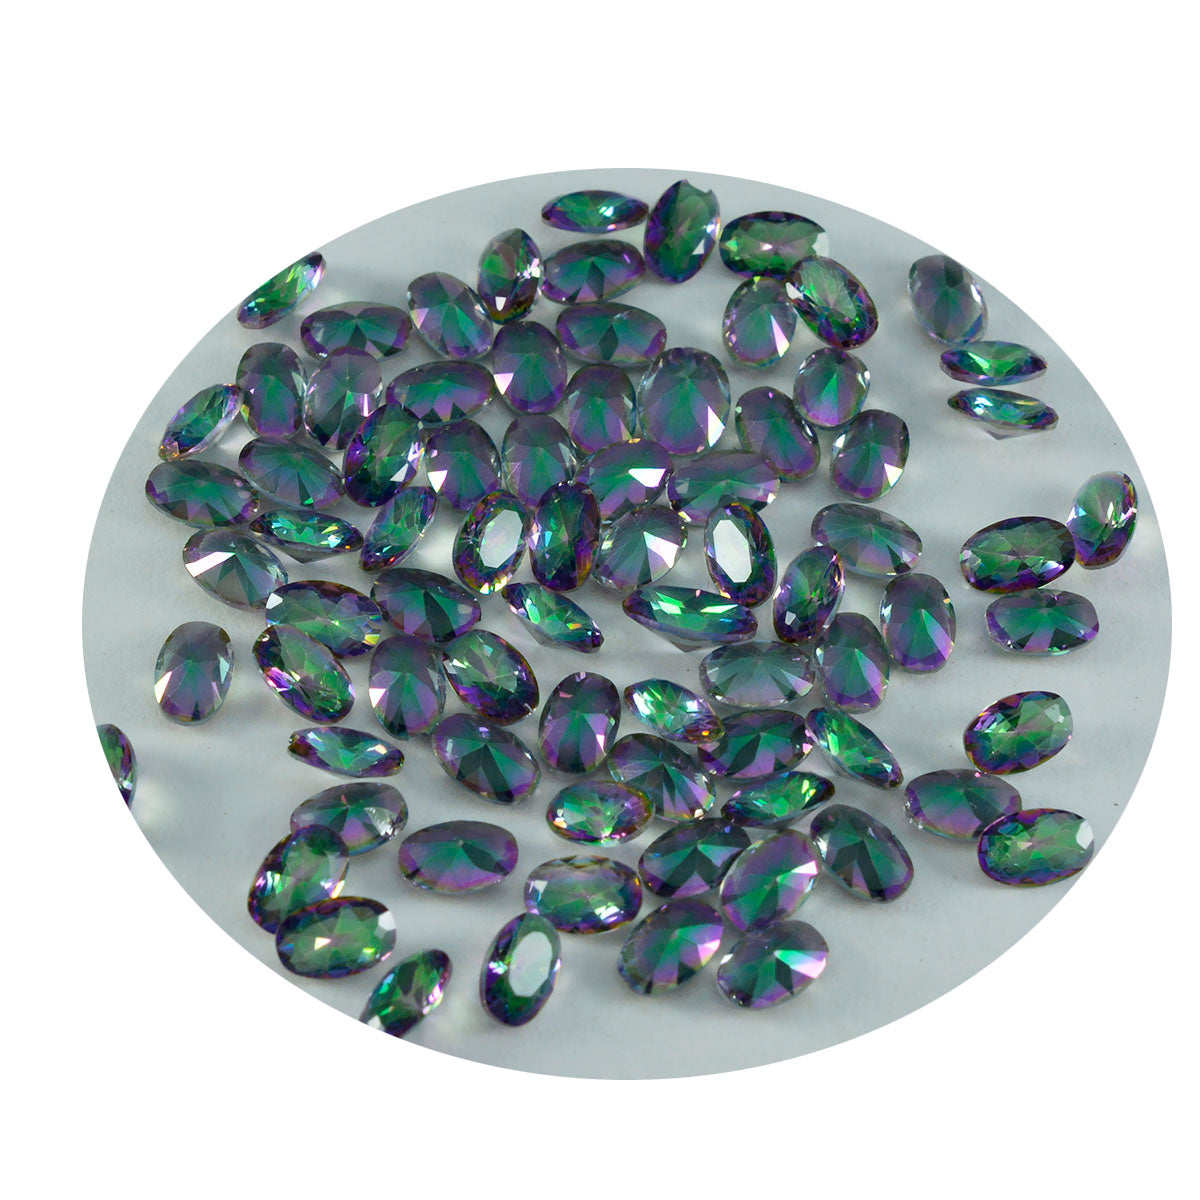 Riyogems 1PC Multi Color Mystic Quartz Faceted 4x6 mm Oval Shape A1 Quality Loose Gems